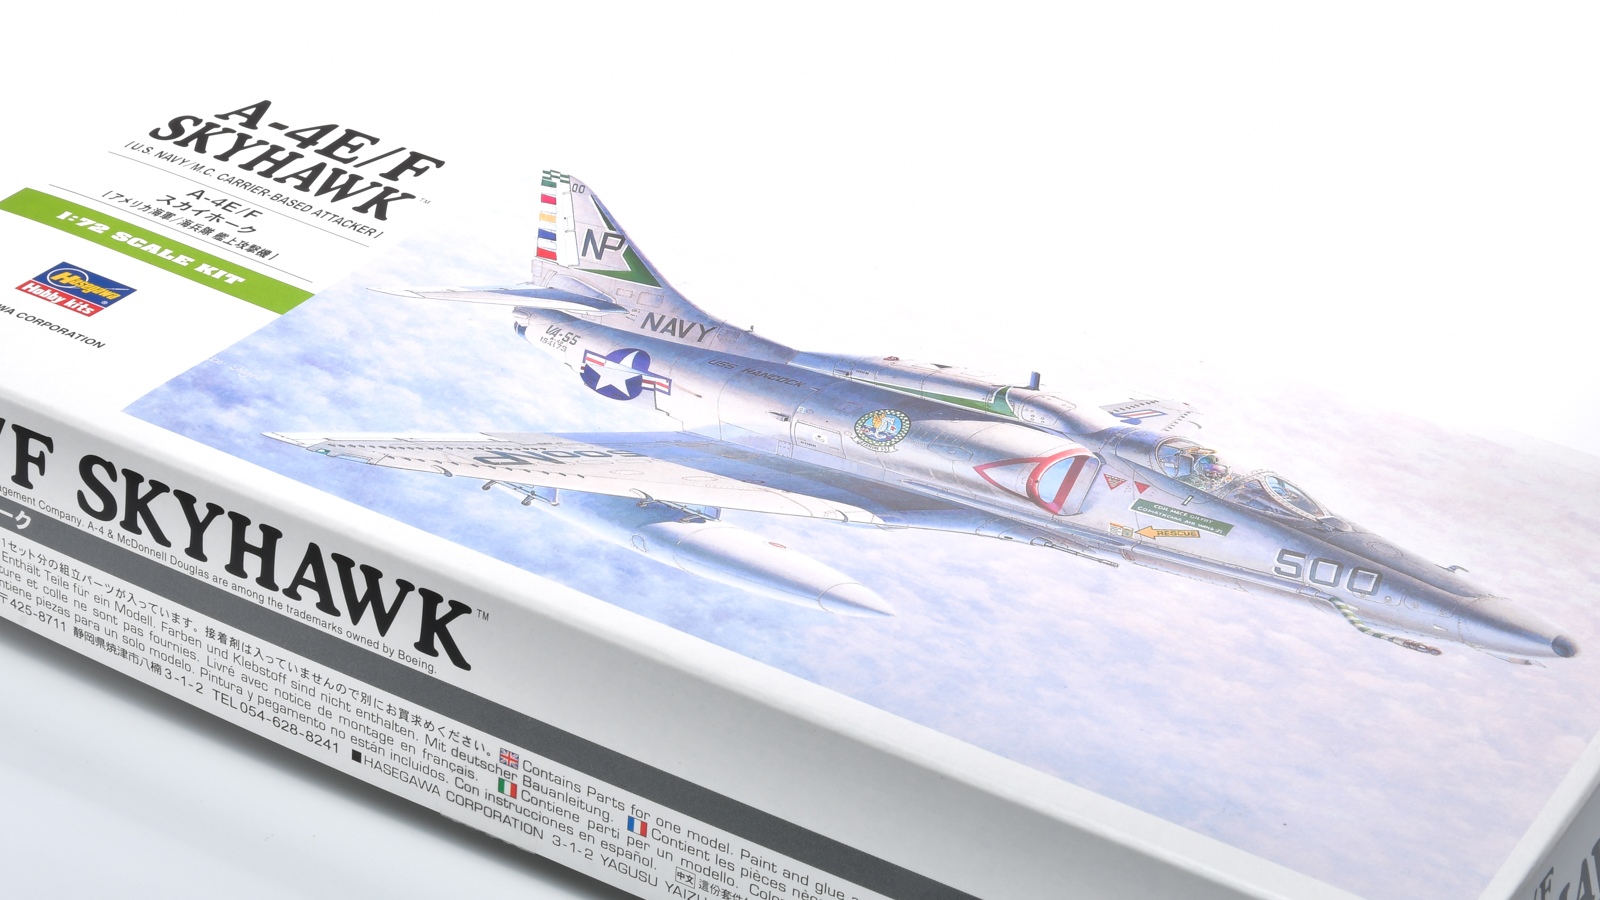 ハセガワ1/72飛行機模型ピックアップ!世界中で愛される小型ジェット艦上攻撃機「スカイホーク」!! | nippper  ニッパーを握るすべての人と、モケイの楽しさをシェアするサイト